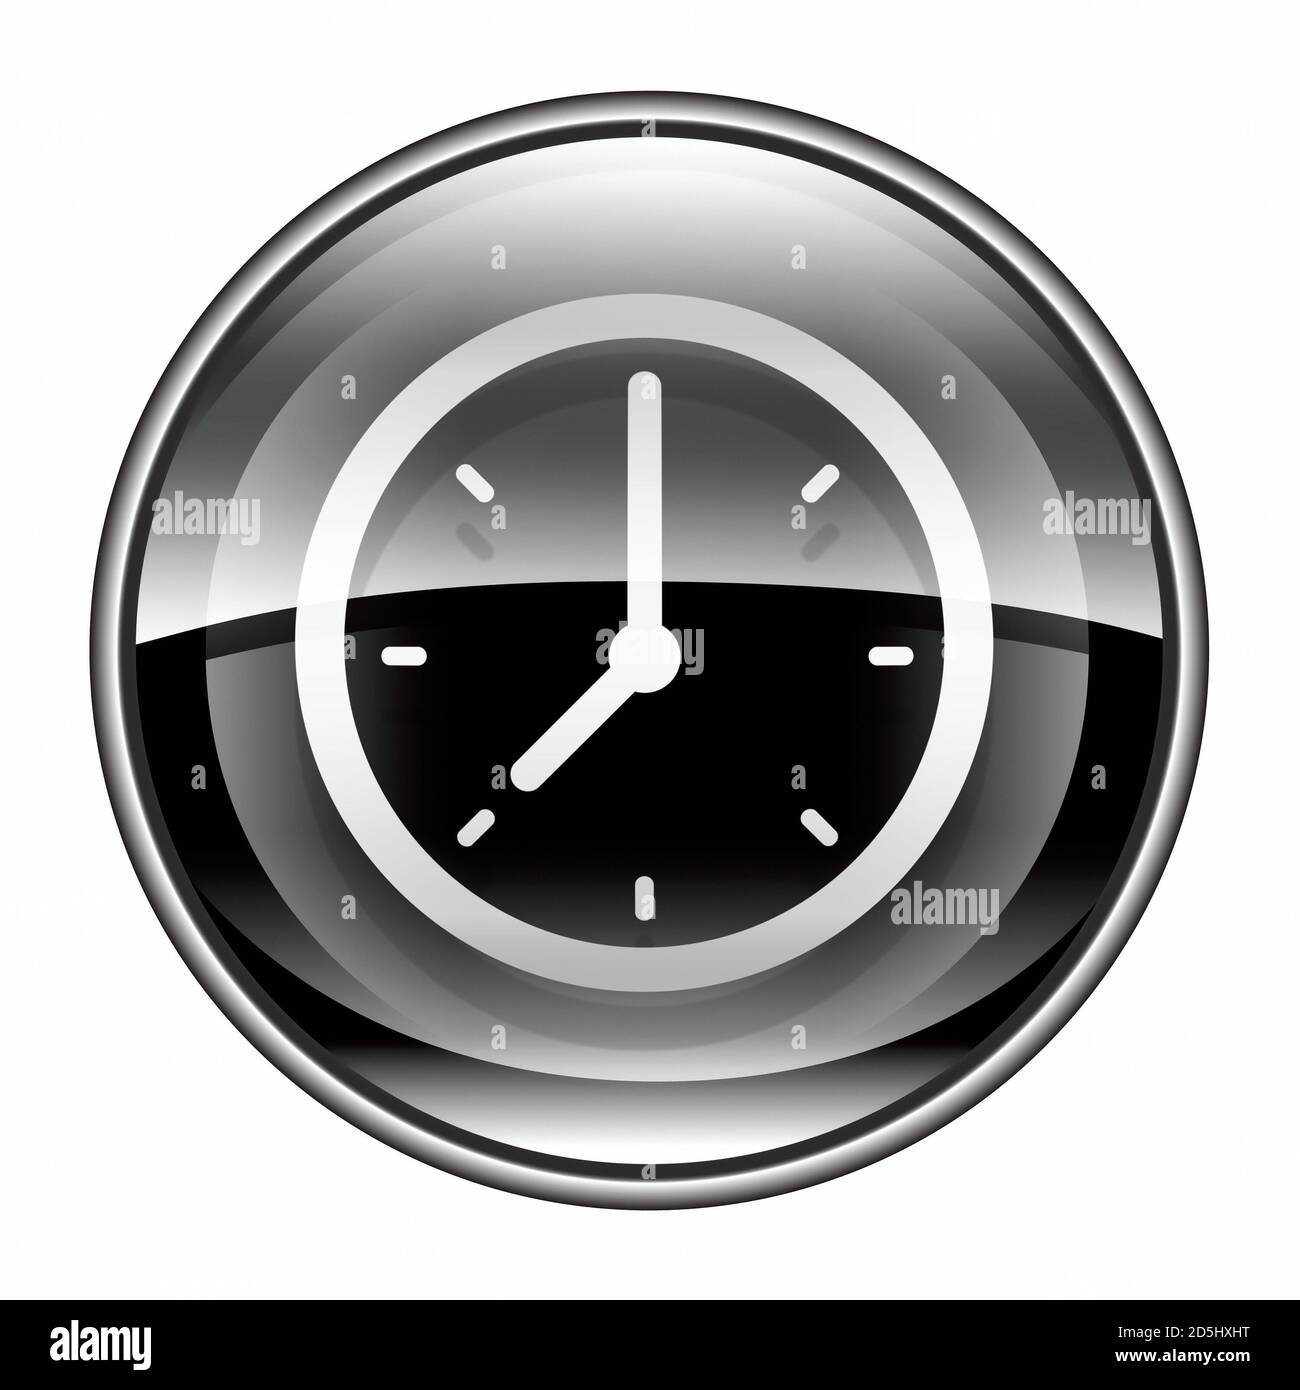 clock icon black, isolated on white background. Stock Photo